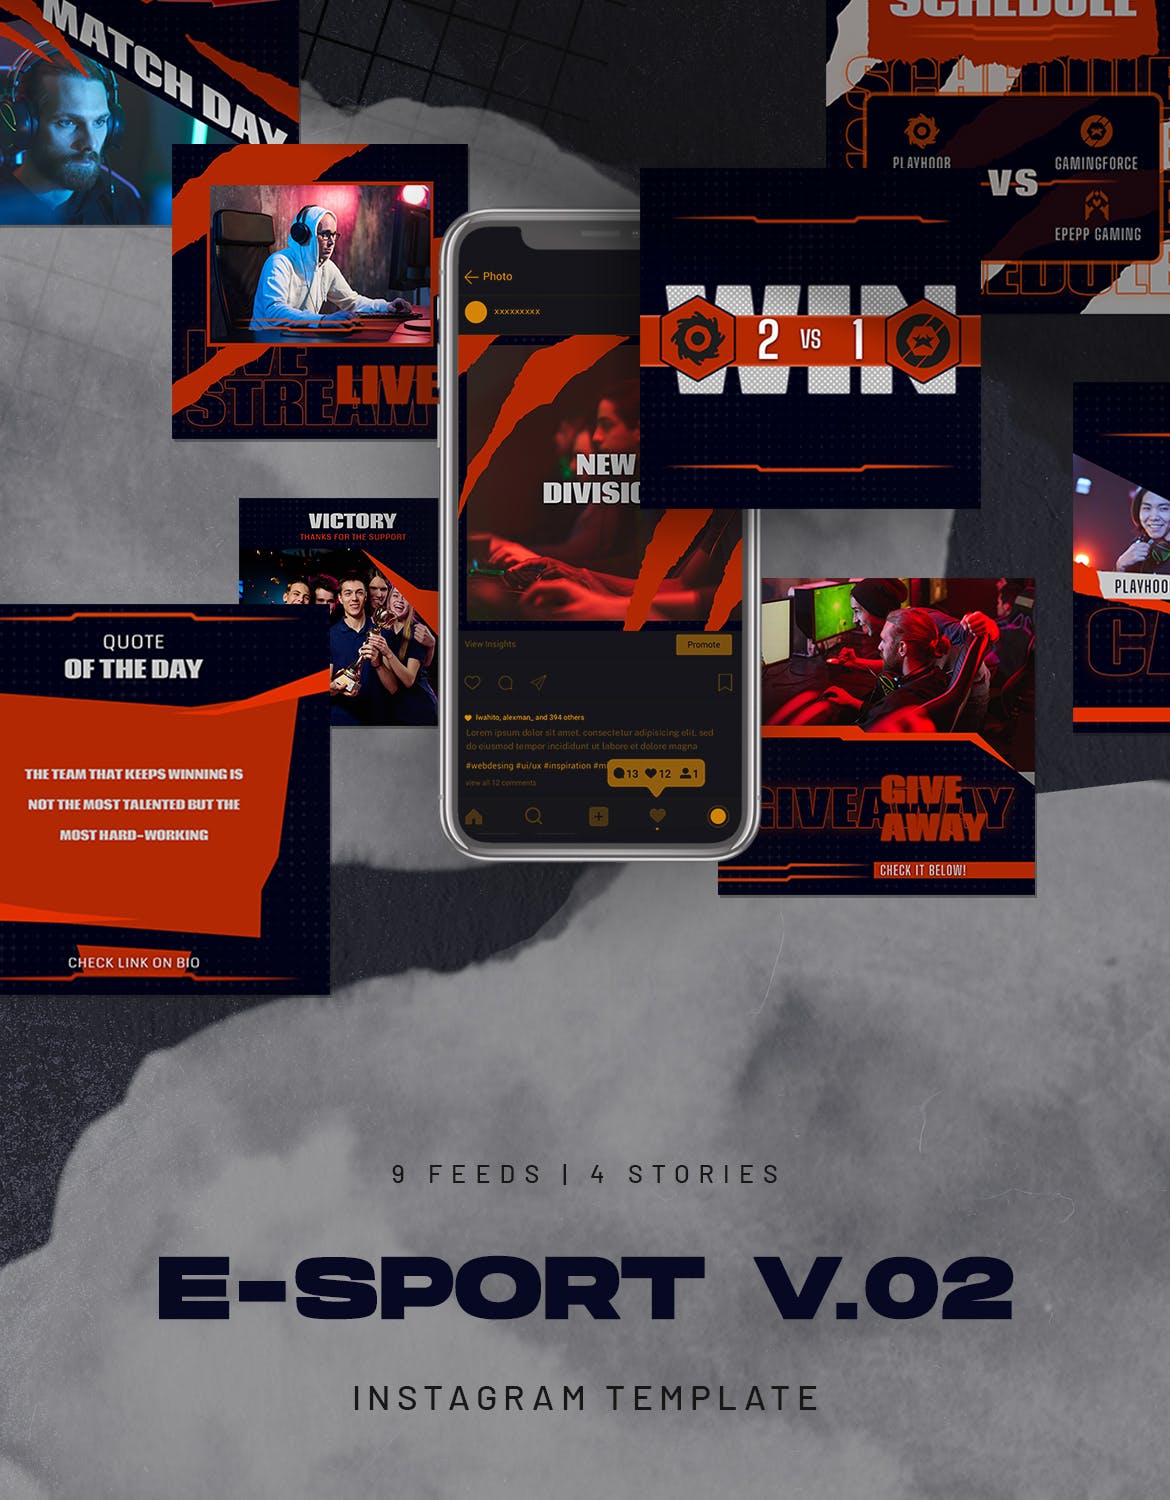 电子竞技游戏相关Instagram定制故事贴图模板V.2 eSport & Gaming Instagram Stories V.02设计素材模板